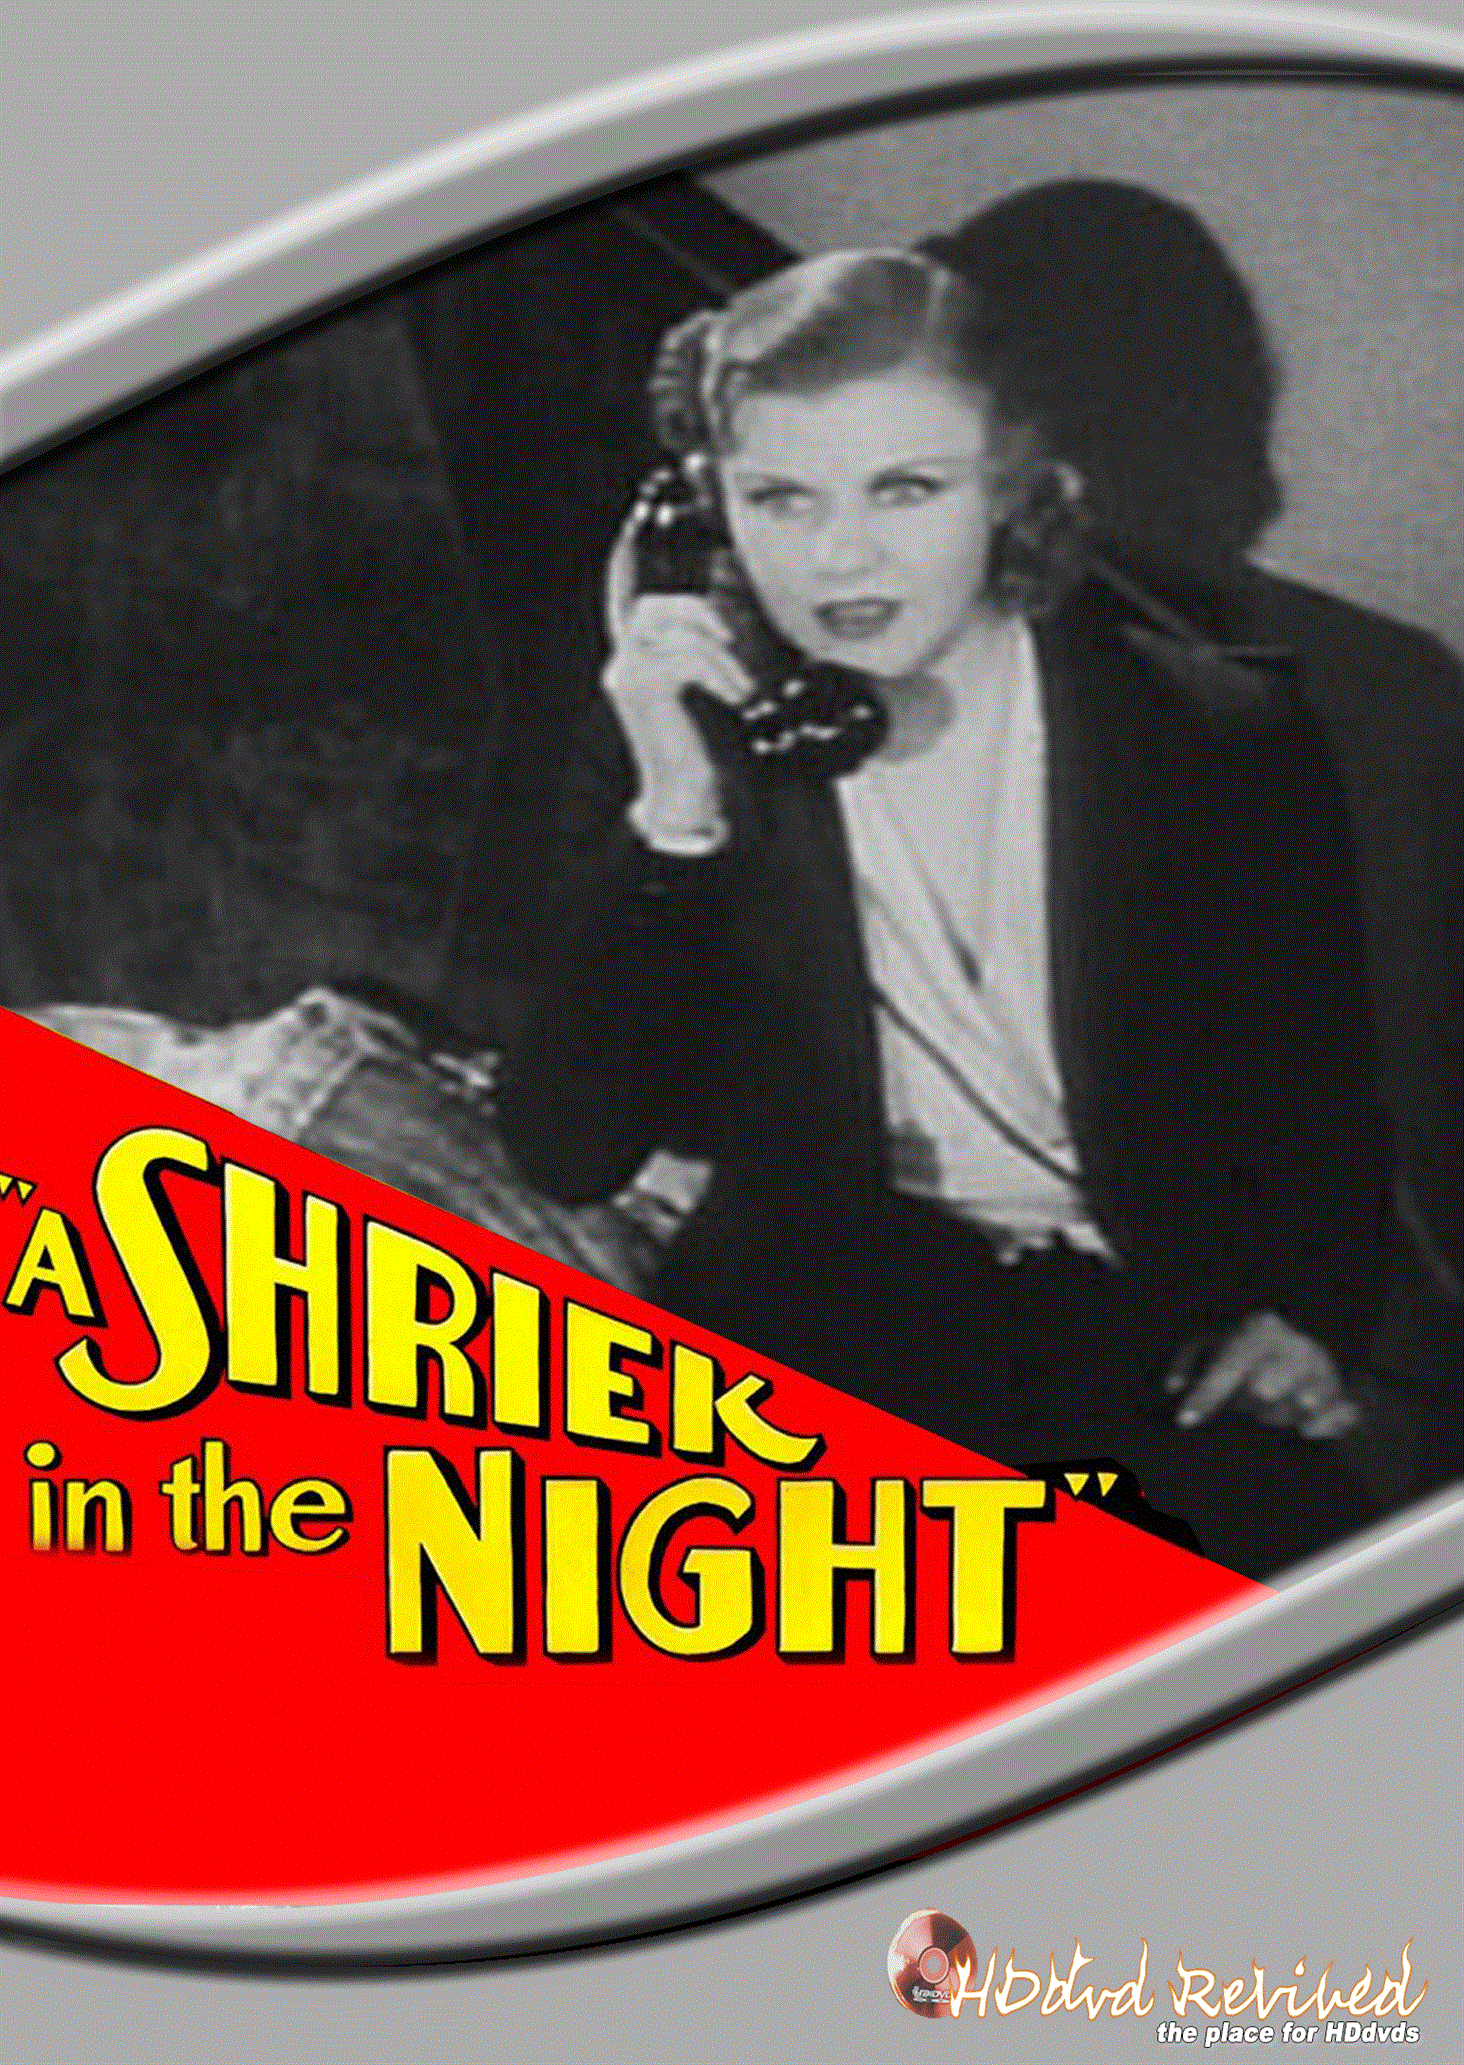 A Shriek in the Night (1933) Standard DVD (HDDVD-Revived) UK Seller